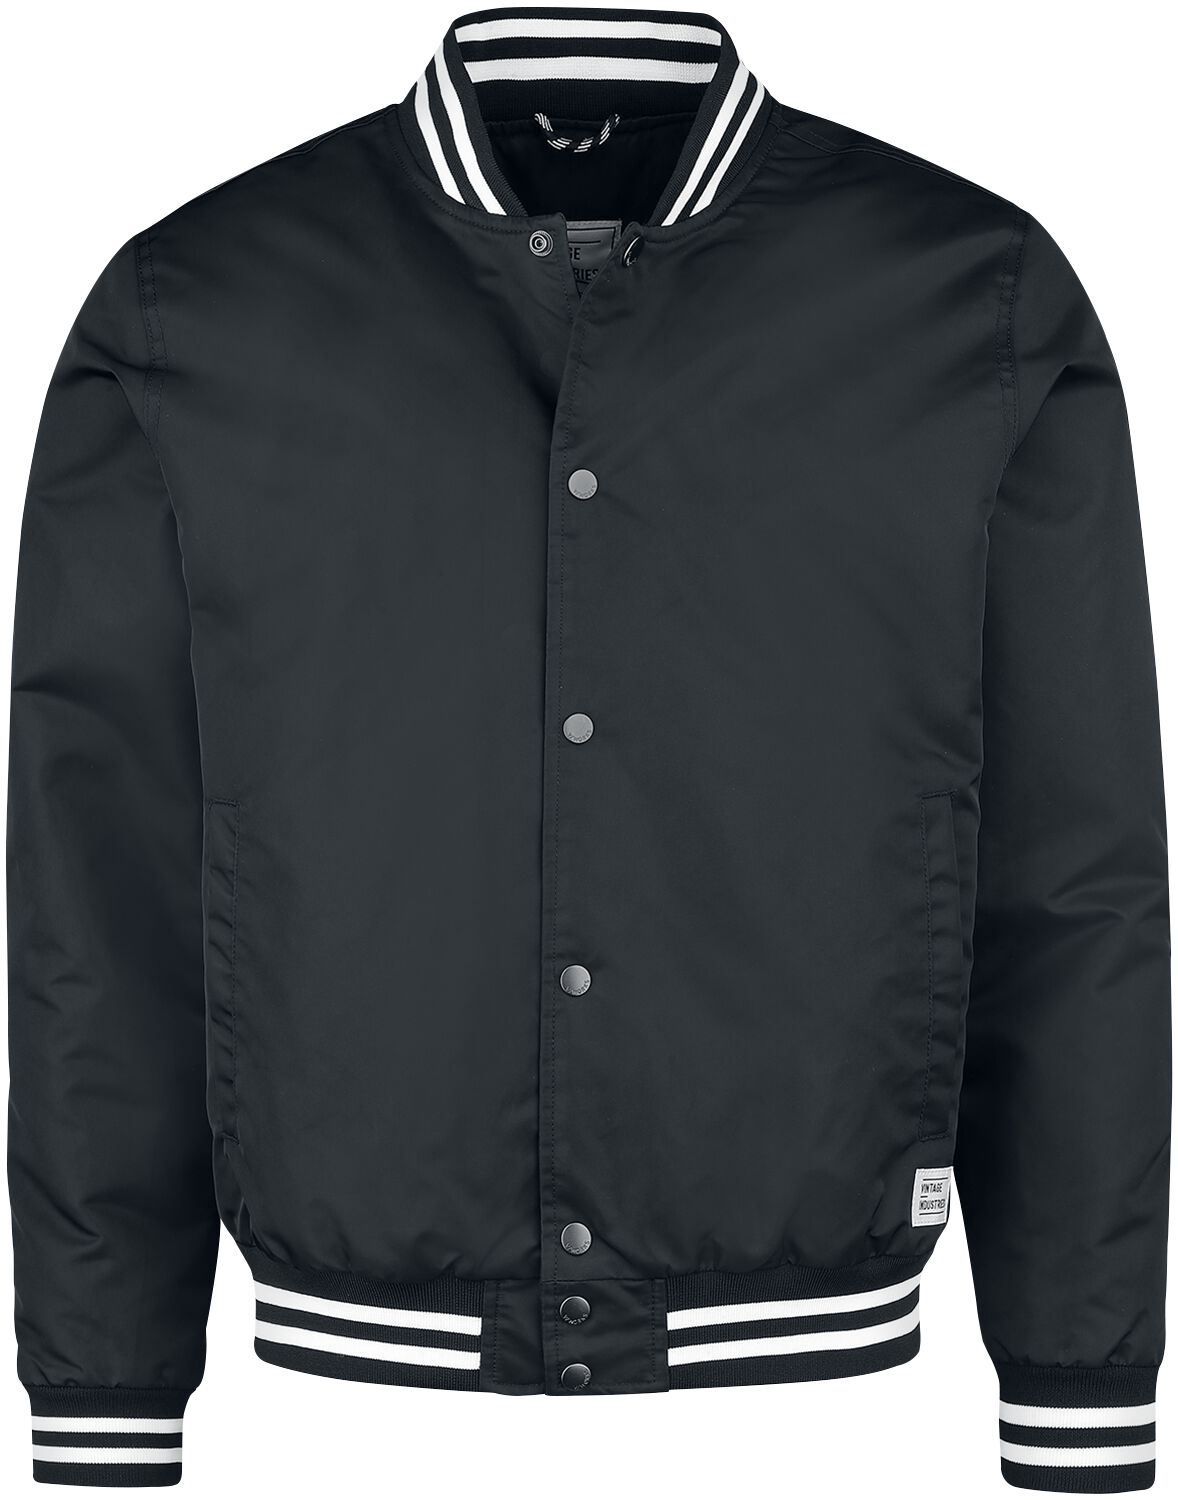 Vintage Industries Übergangsjacke - Chapman Jacket - M bis XXL - für Männer - Größe M - schwarz